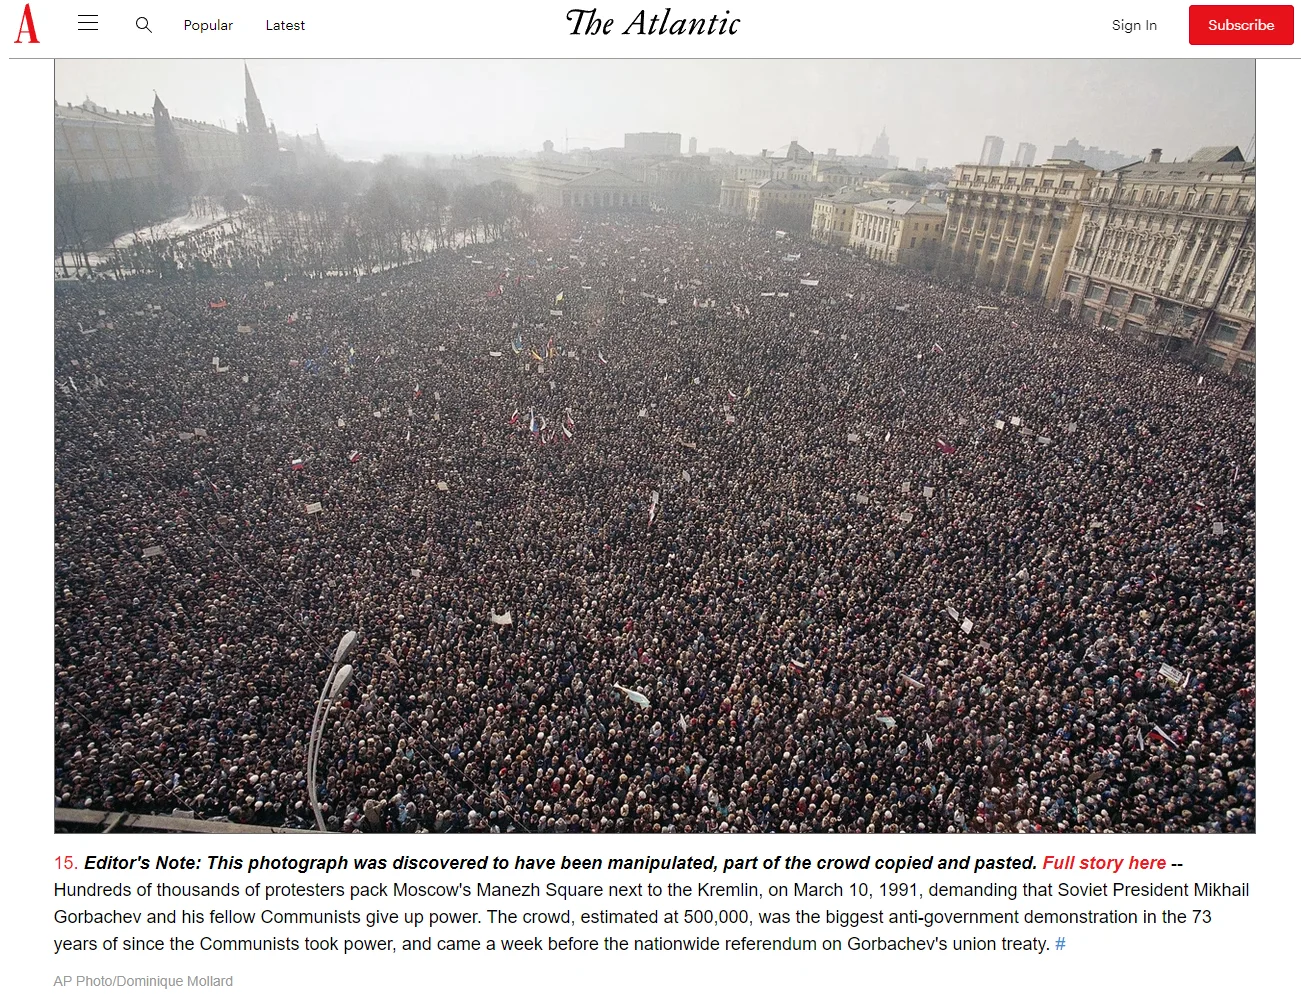 Zdjęcie moskiewskiego protestu z 10 marca 1991 opublikowane na łamach The Atlantic (autor: Dominique Mollard)